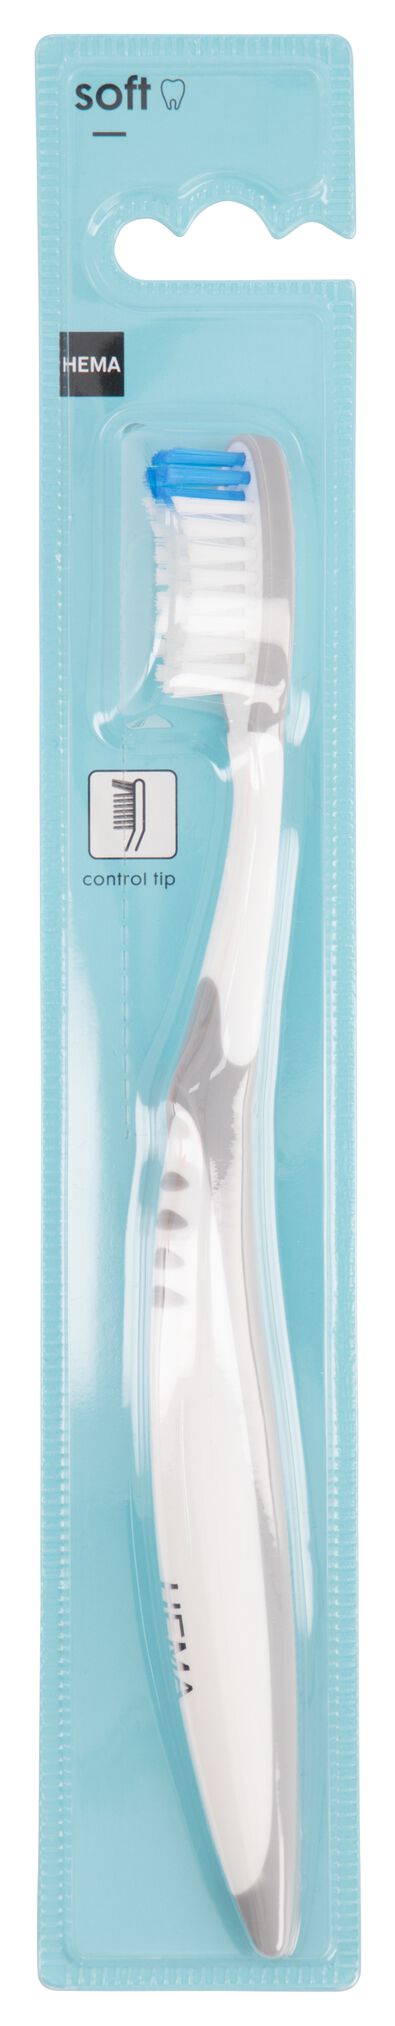 brosse à dents avec pointe de contrôle - soft - 11141031 - HEMA